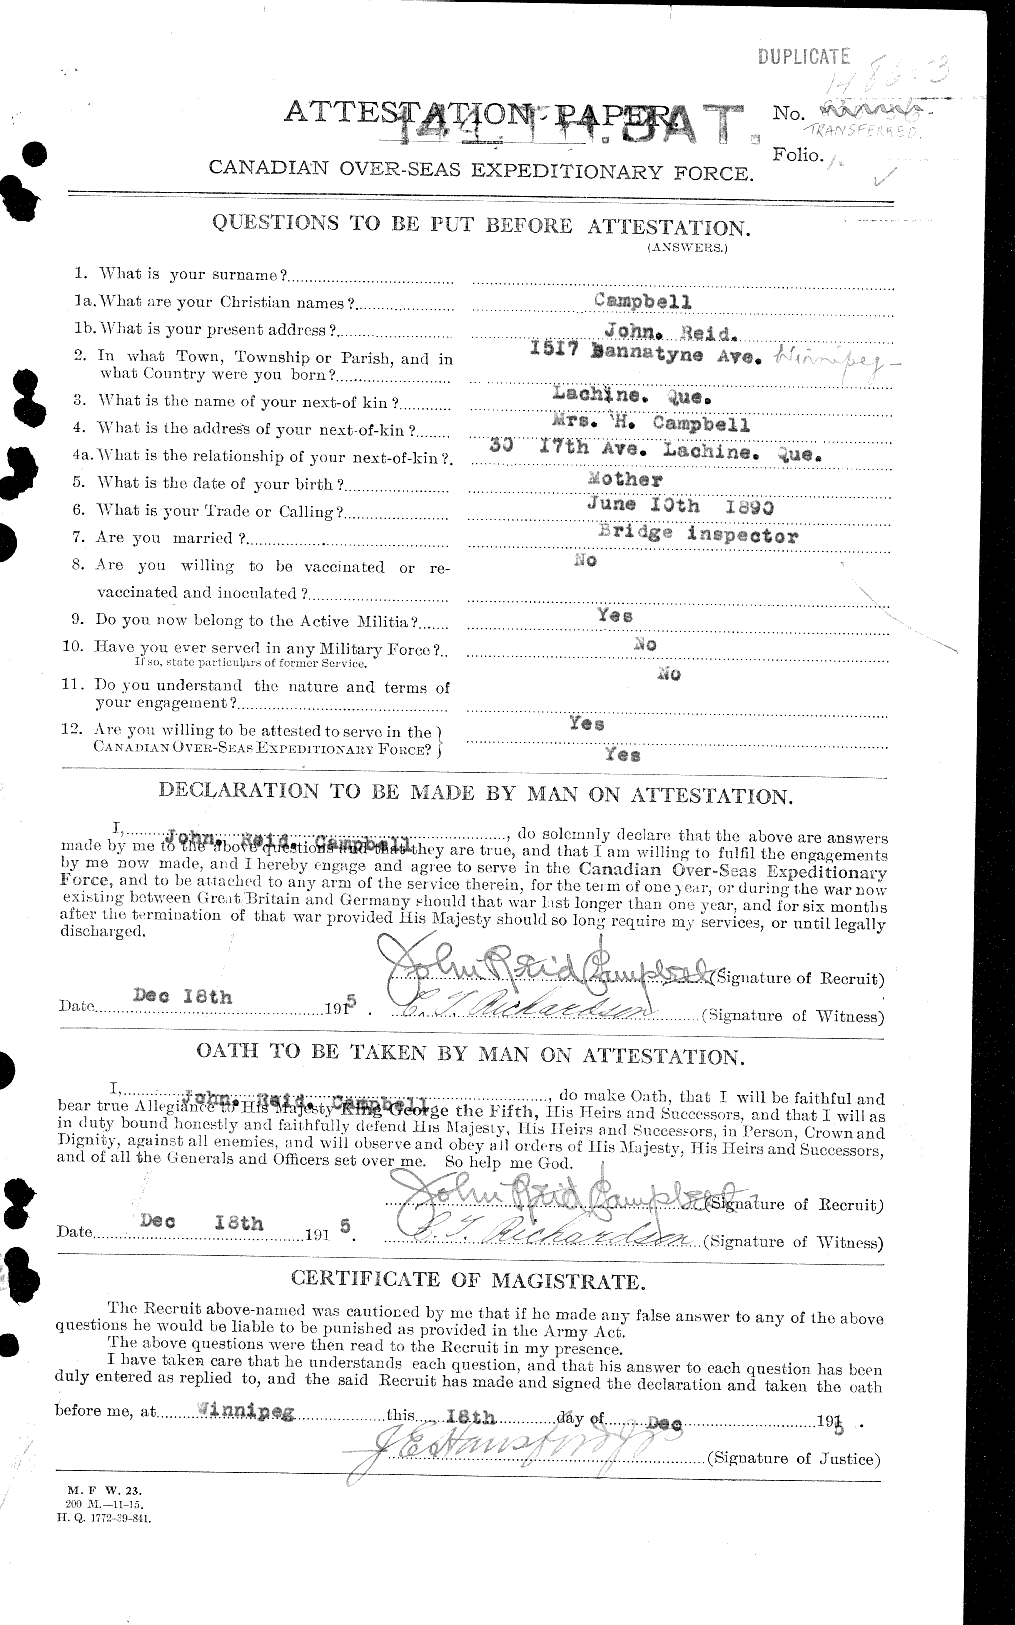 Dossiers du Personnel de la Première Guerre mondiale - CEC 003774a